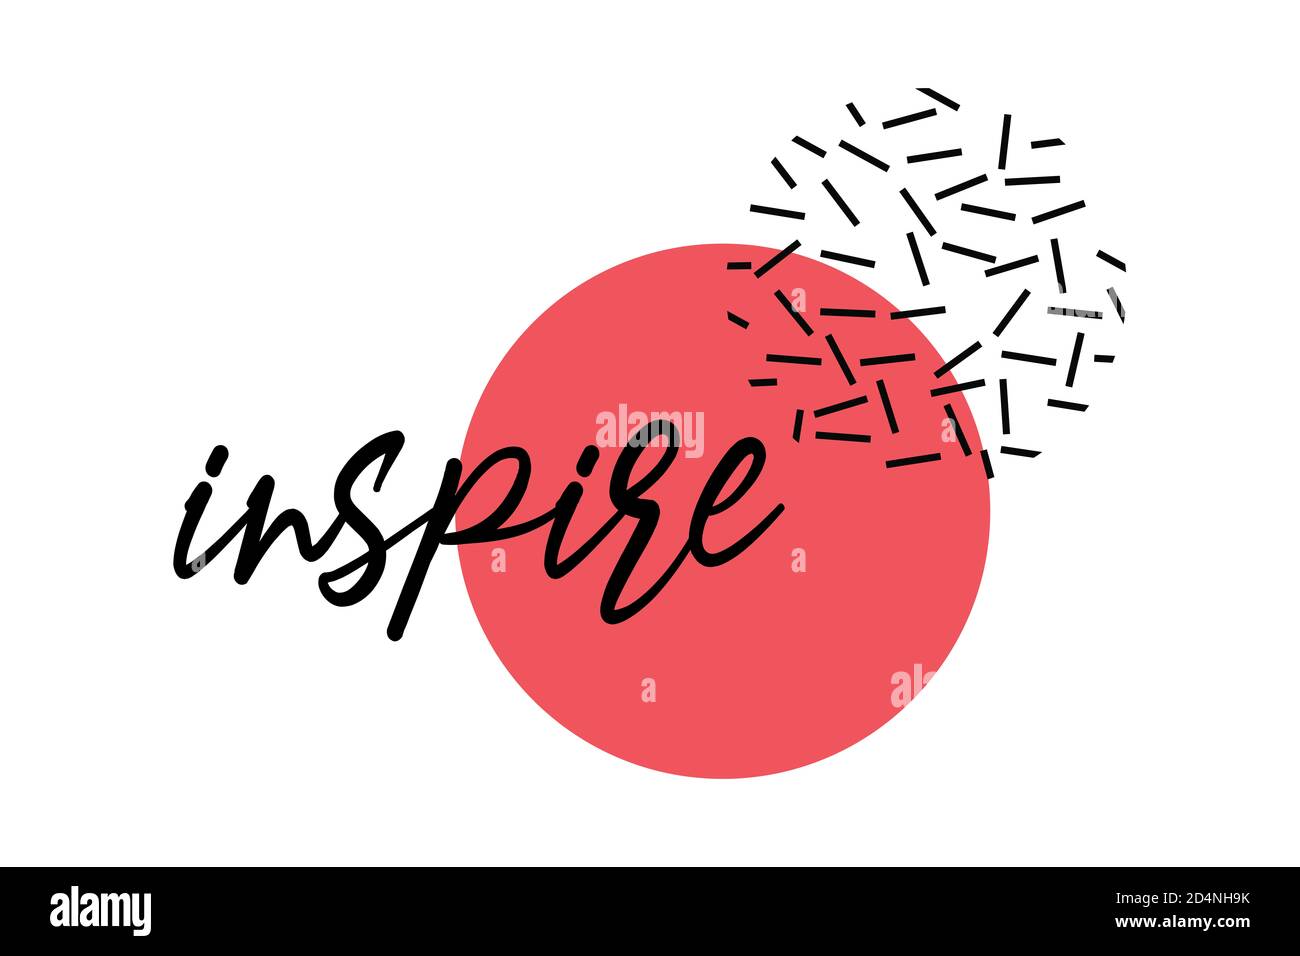 Design grafico moderno e creativo di una parola "Inspire". Forme geometriche divertenti e giocose con tipografia scritta a mano in rosso e nero. Foto Stock